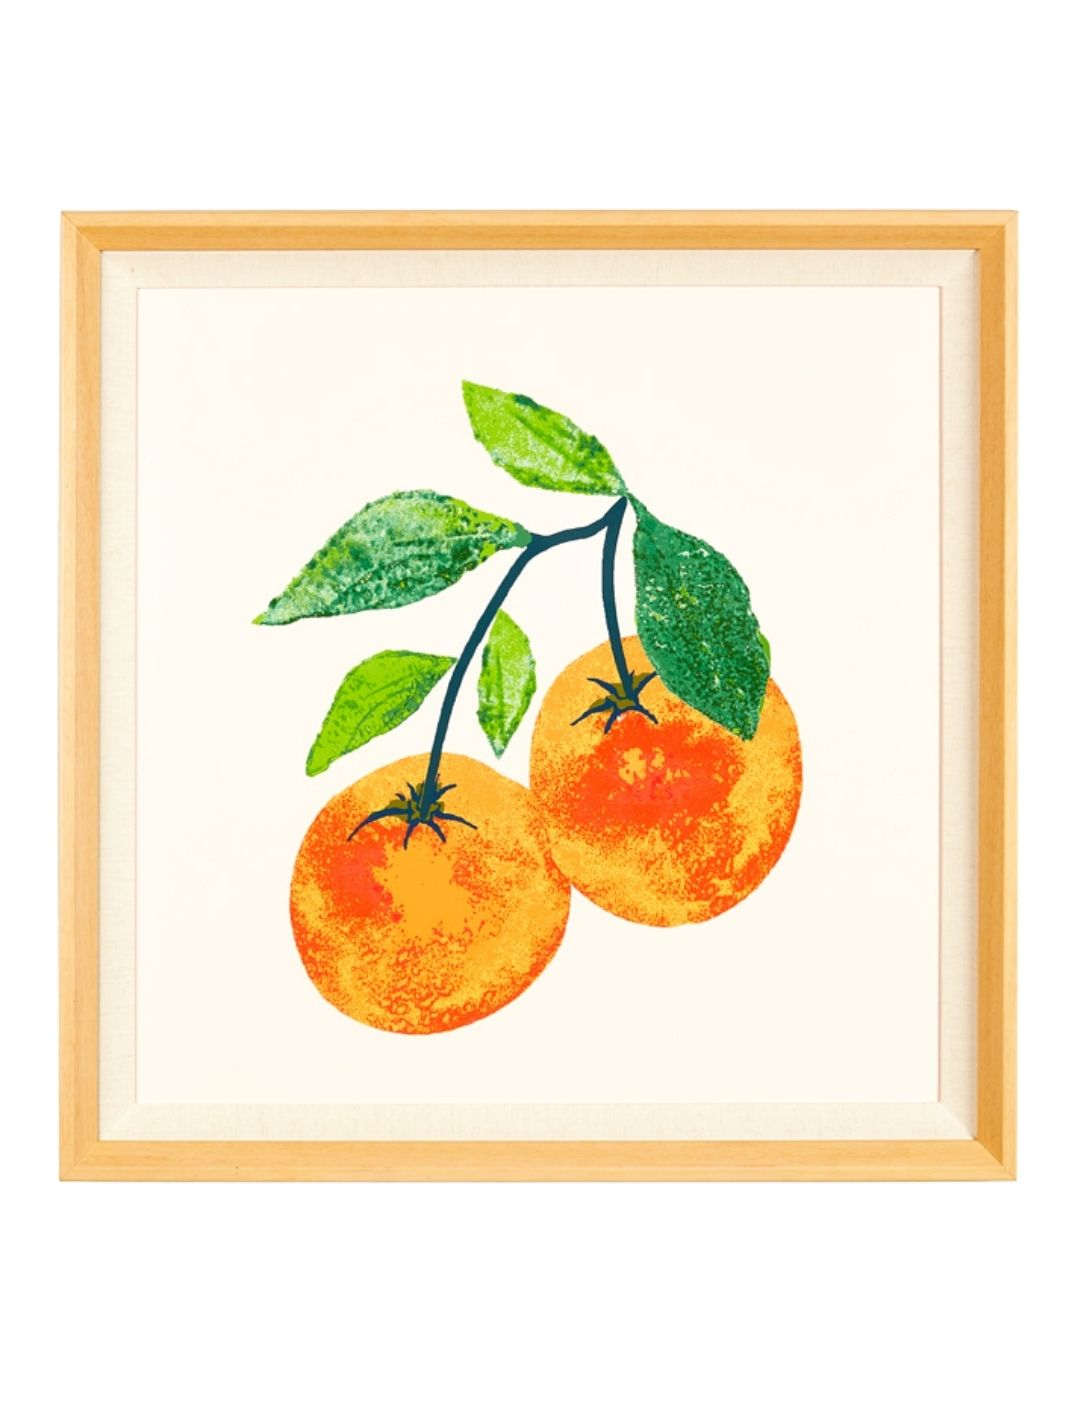 'Valencia Oranges' Framed Art by Nathan Turner